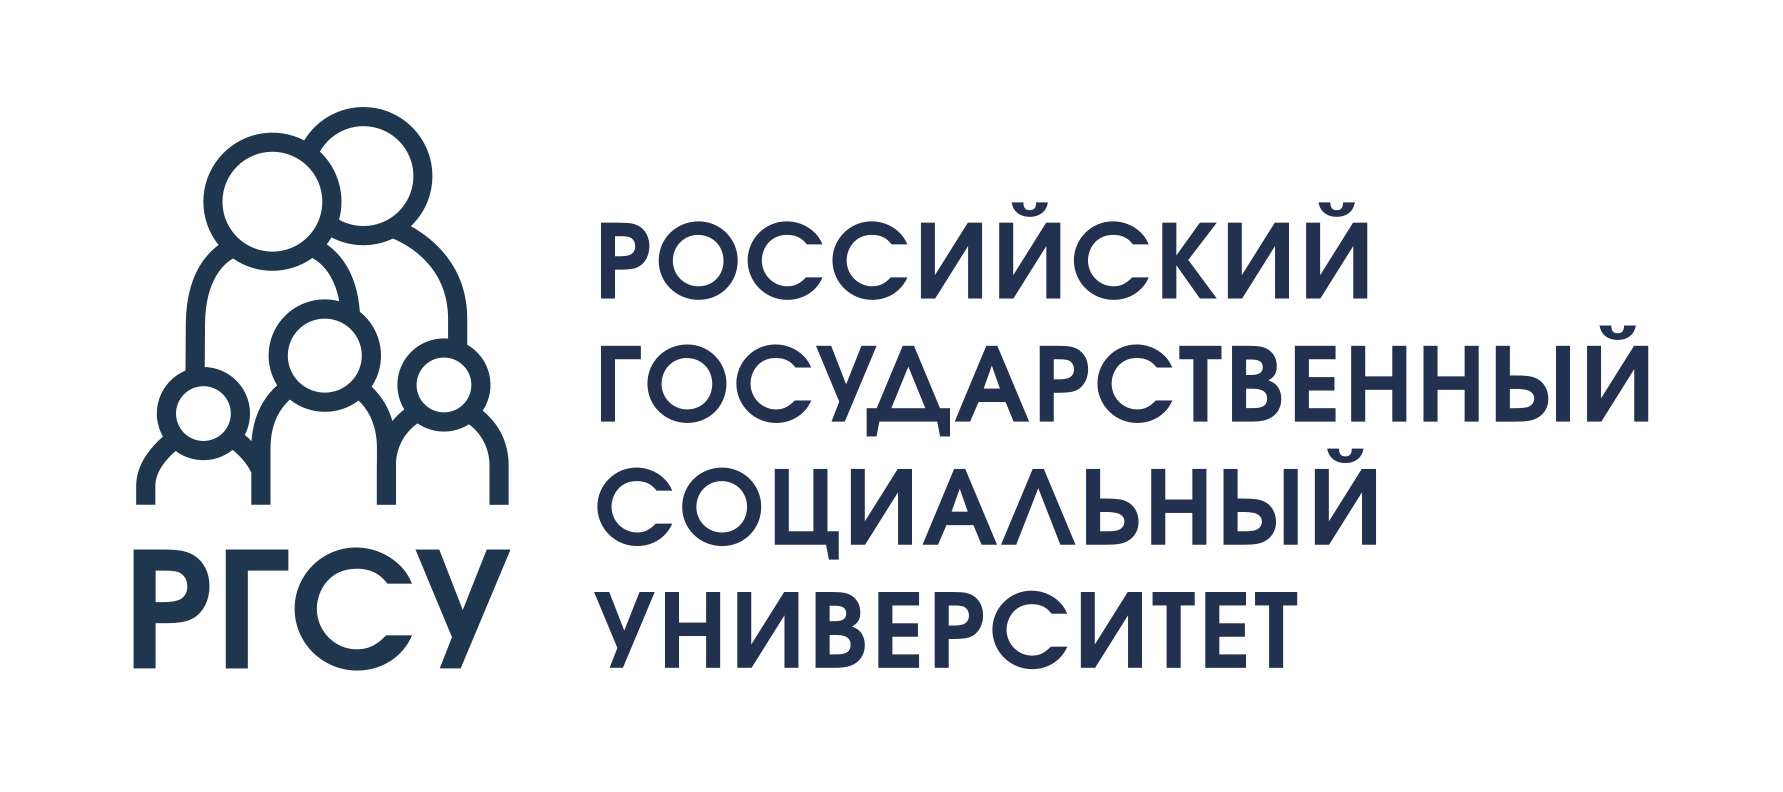 РГСУ - Российский государственный социальный университет